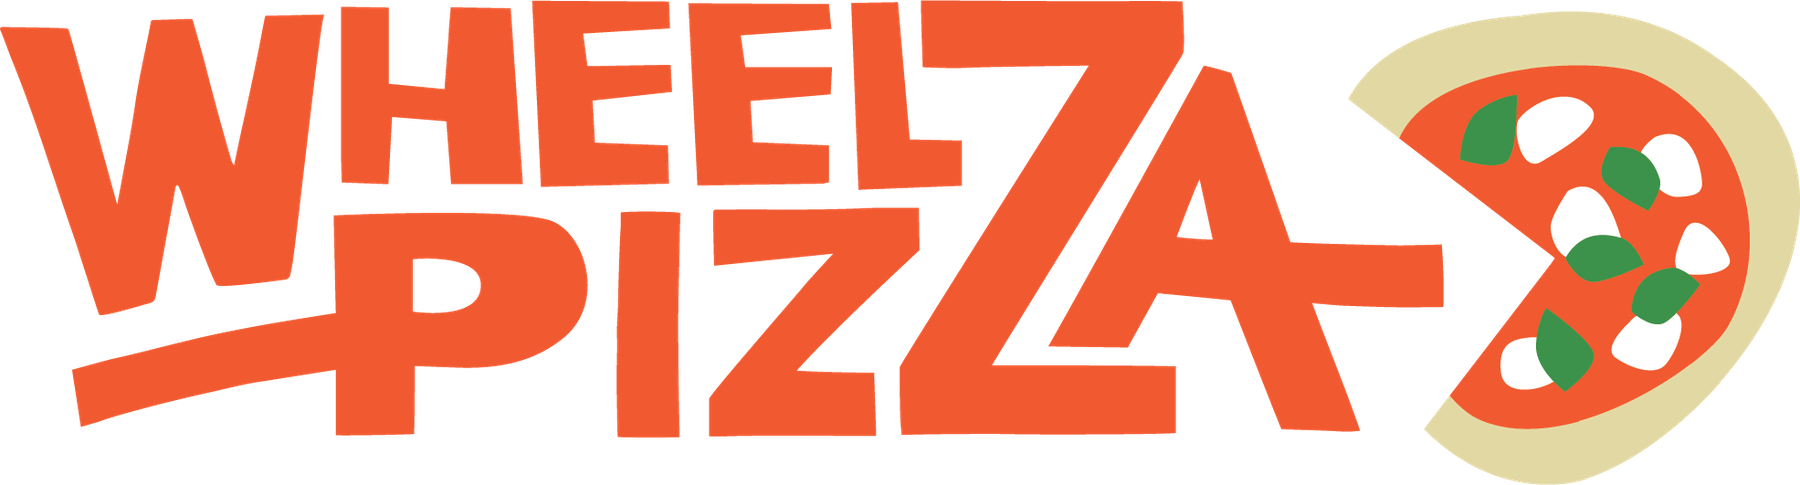 Wheelz Pizza Home